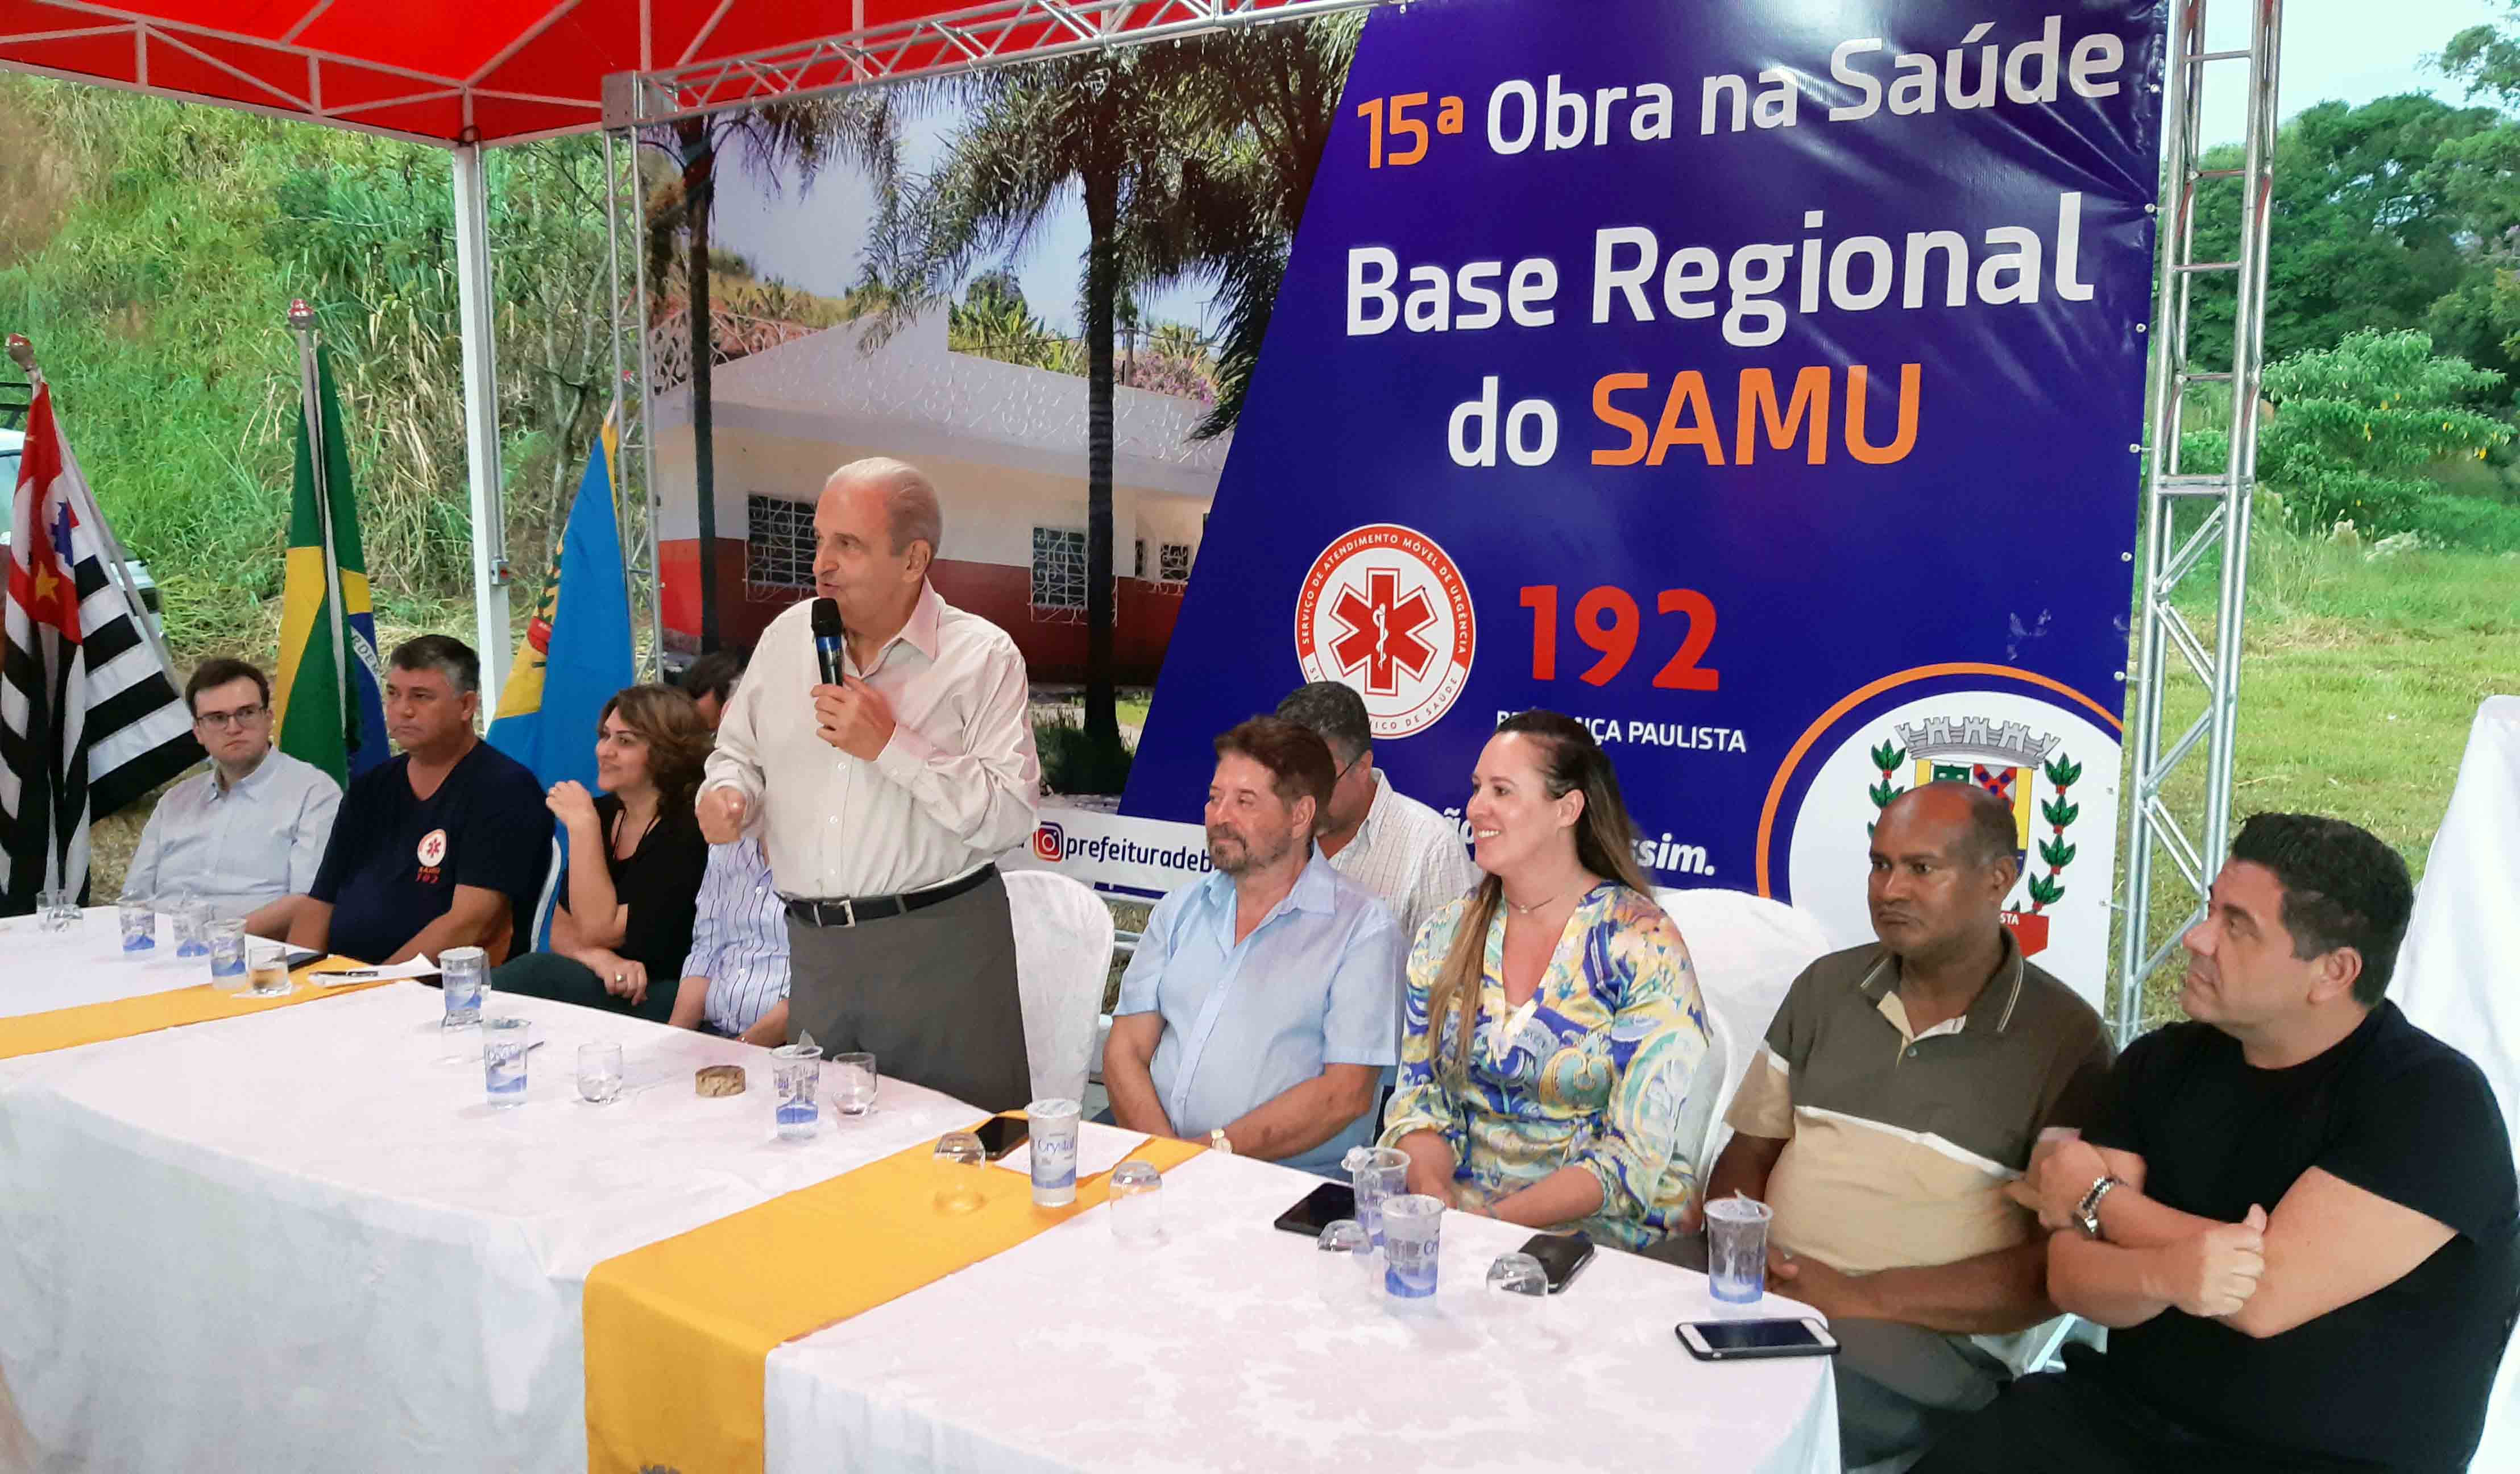 20.02.2020 Inauguração da Base Regional do SAMU (1)